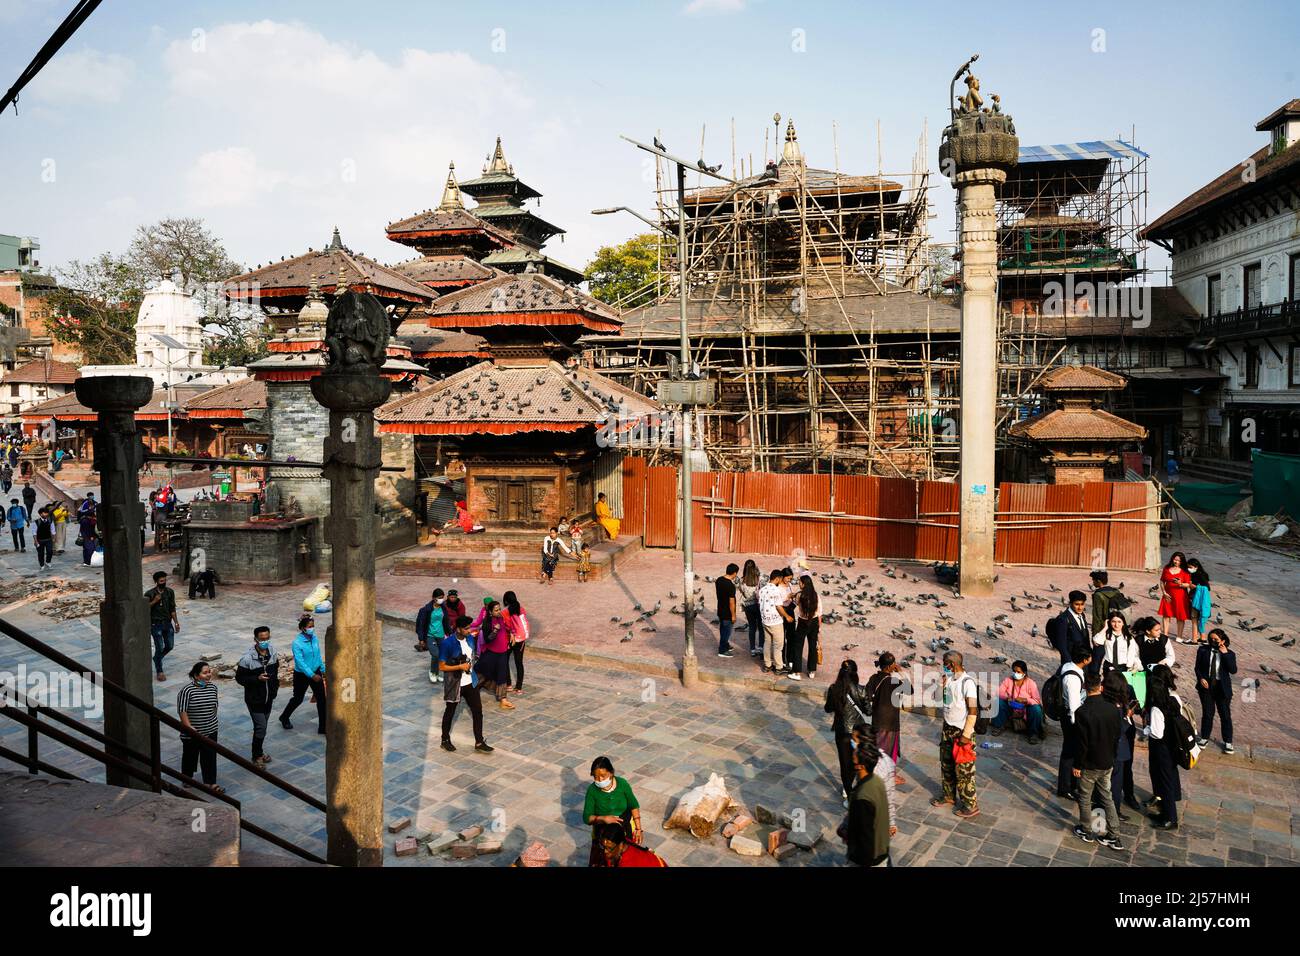 Durch das Erdbeben am 25.4.2015 zerstörte Tempel im Tempelbezirk Durbar Square werden reatauriert, Katmandú, Nepal Foto de stock